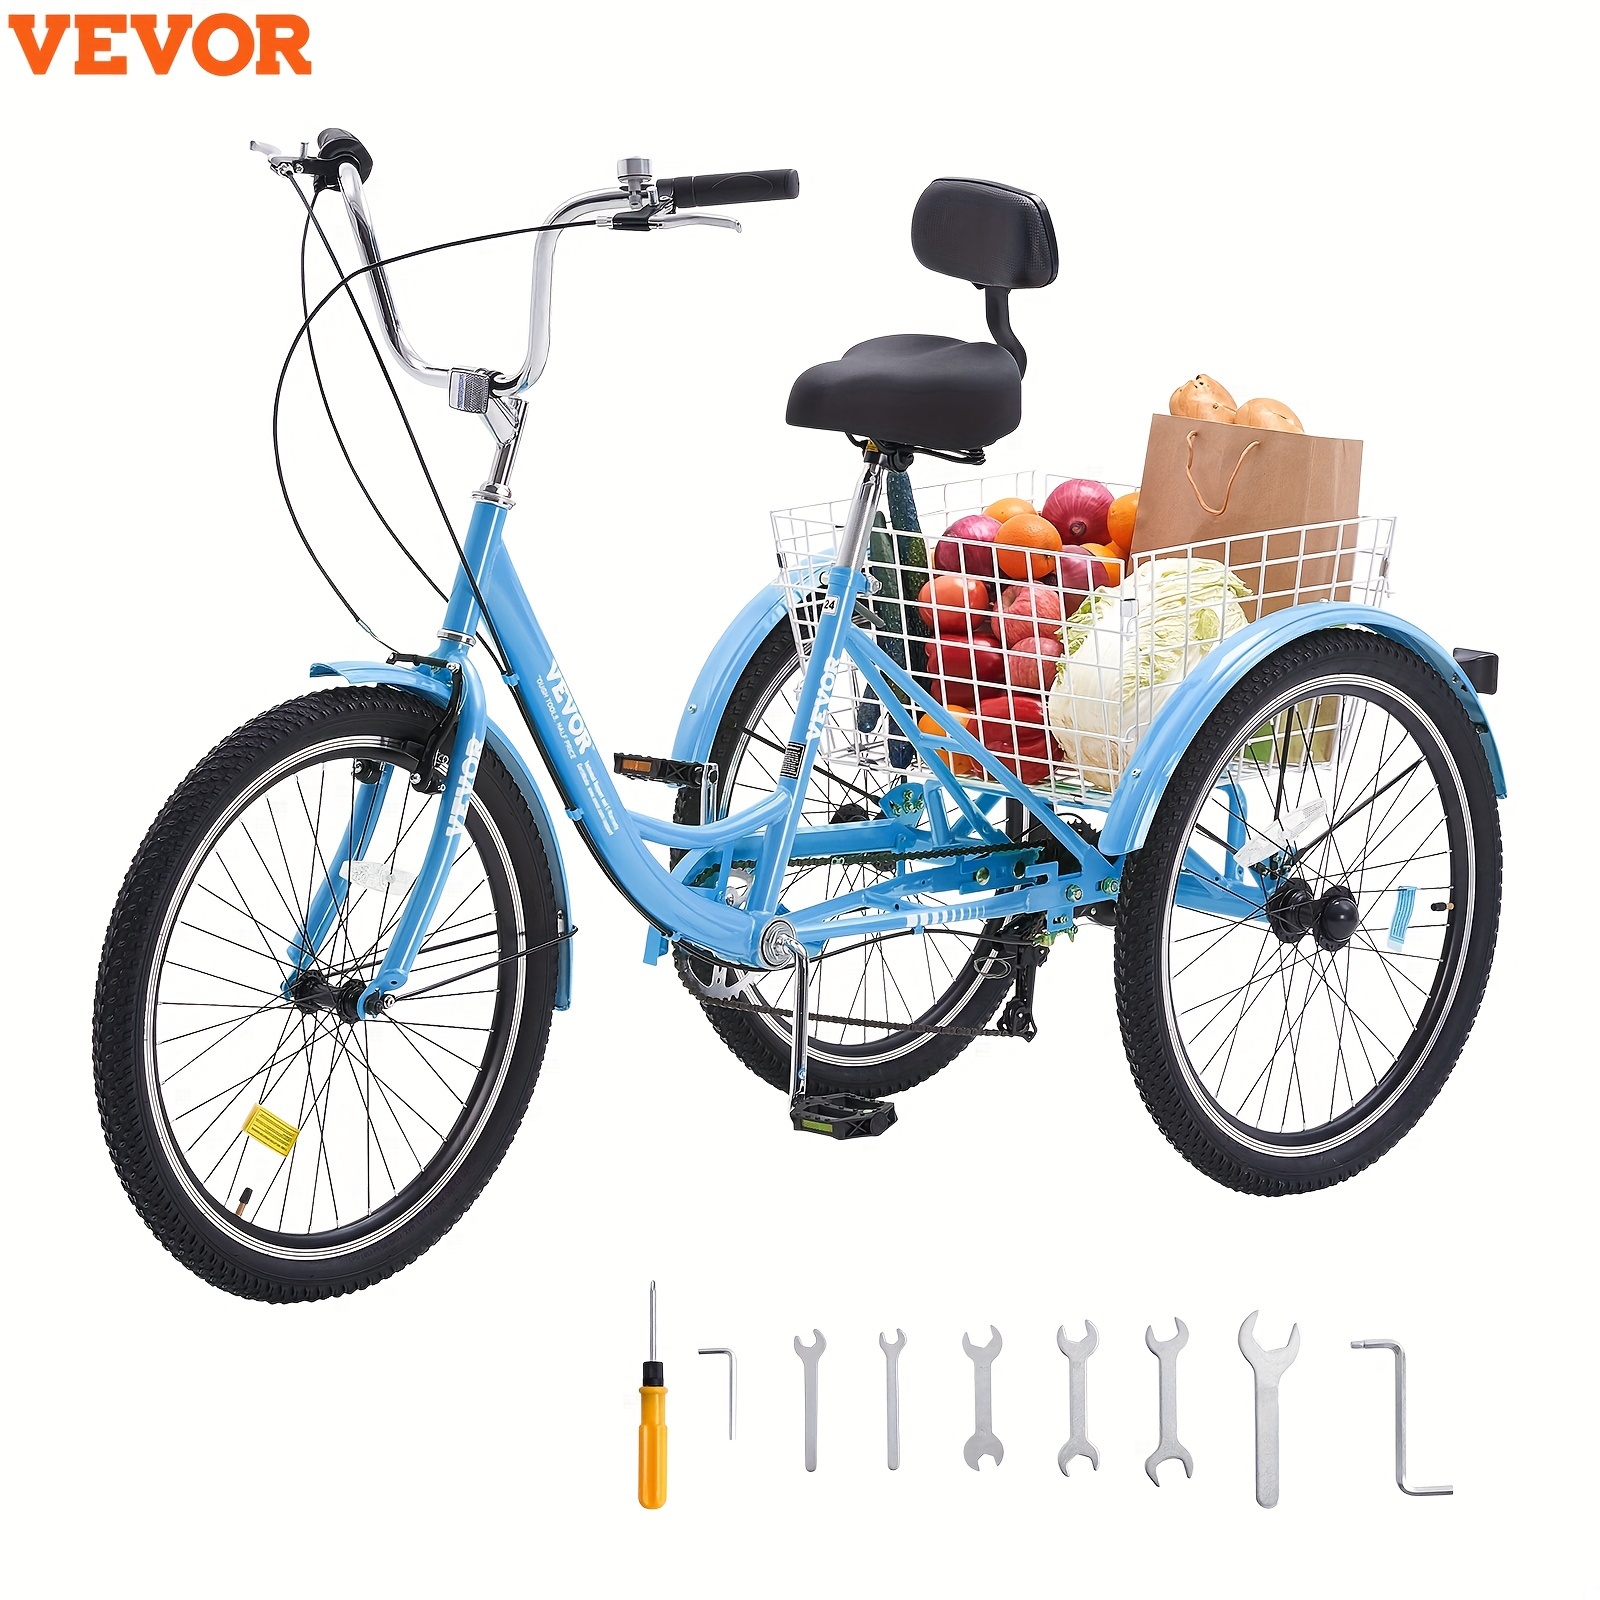 

Vevor 26" Adult 3 Wheel Trike Bicycle Tricycles Bike 7 Speed Blue Carbon Steel